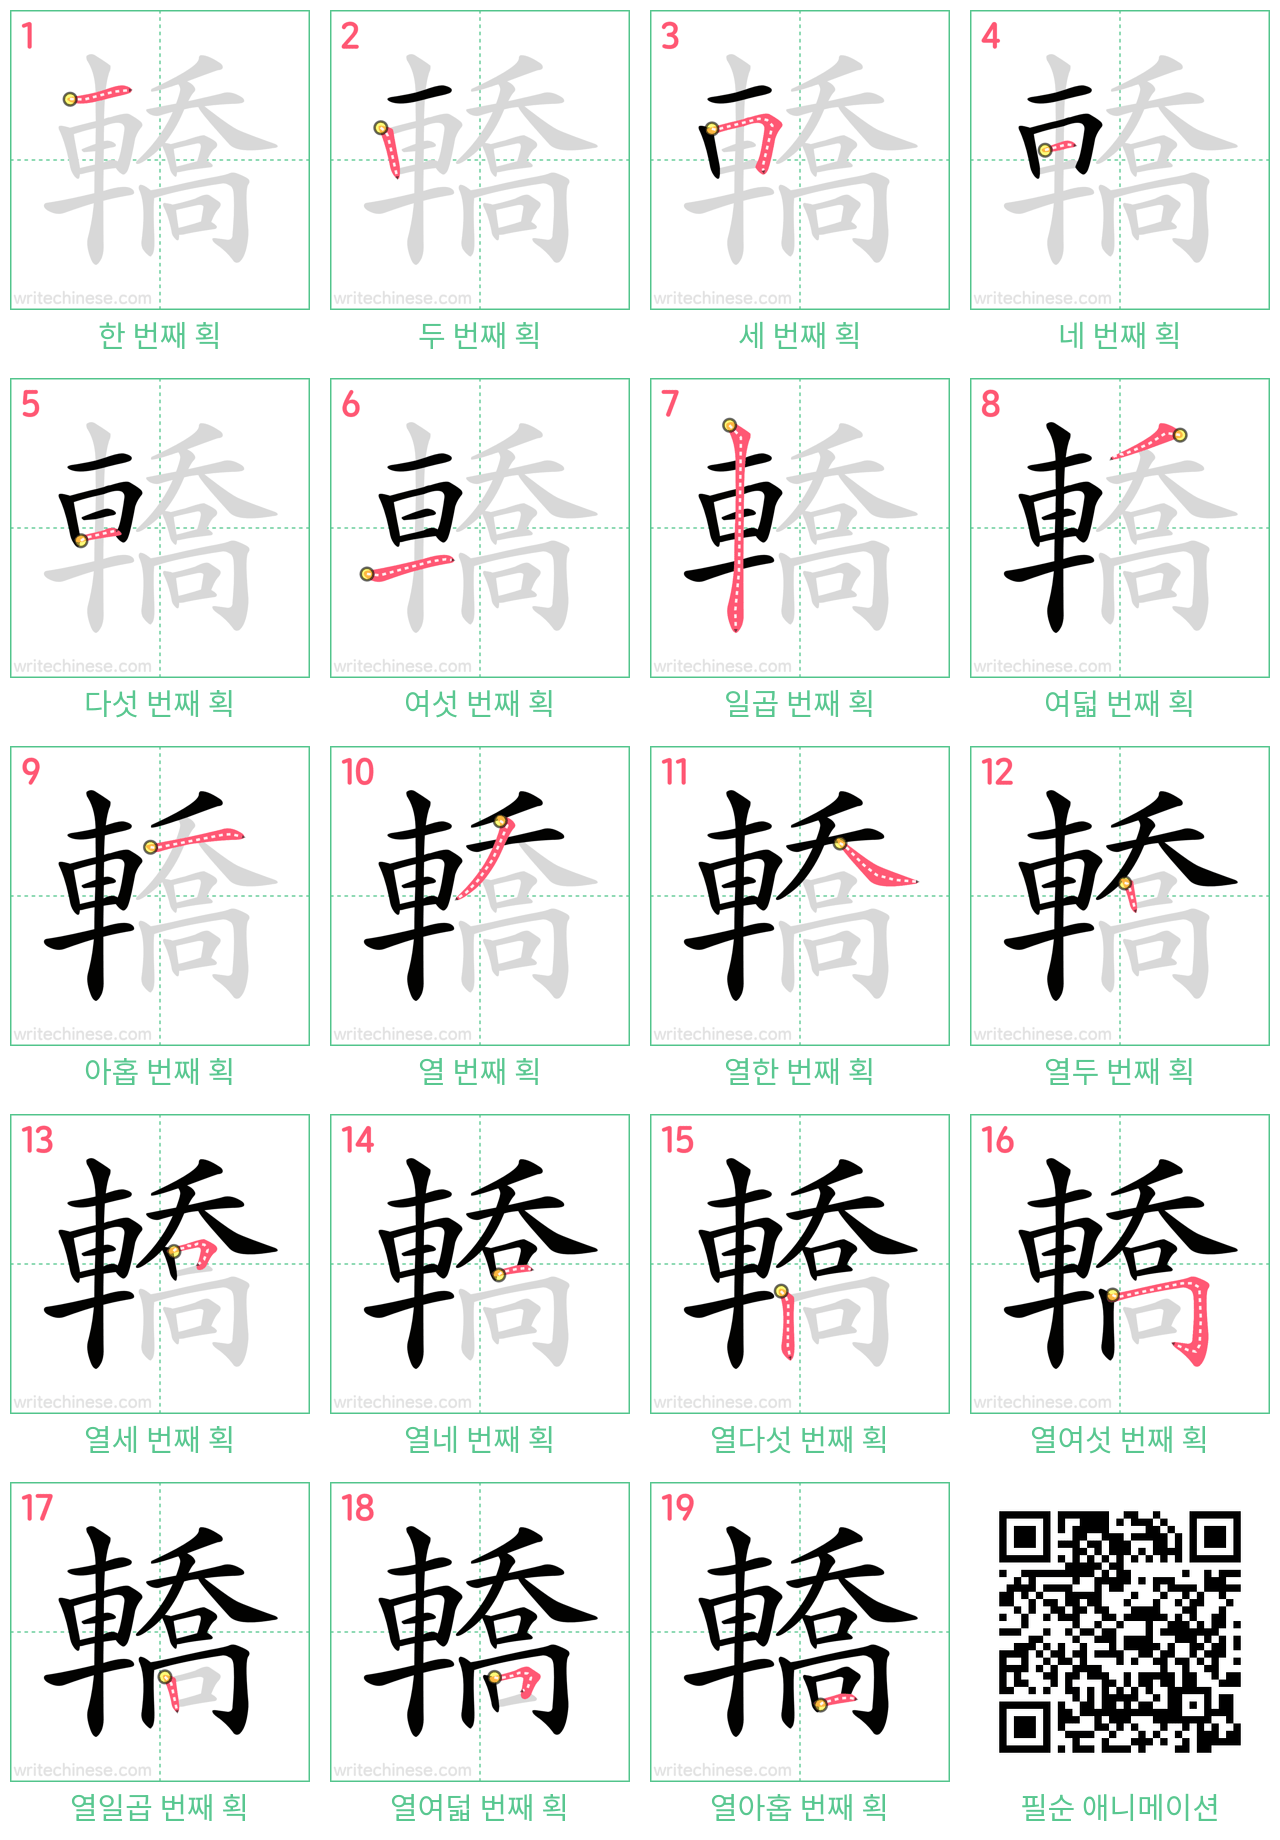 轎 step-by-step stroke order diagrams